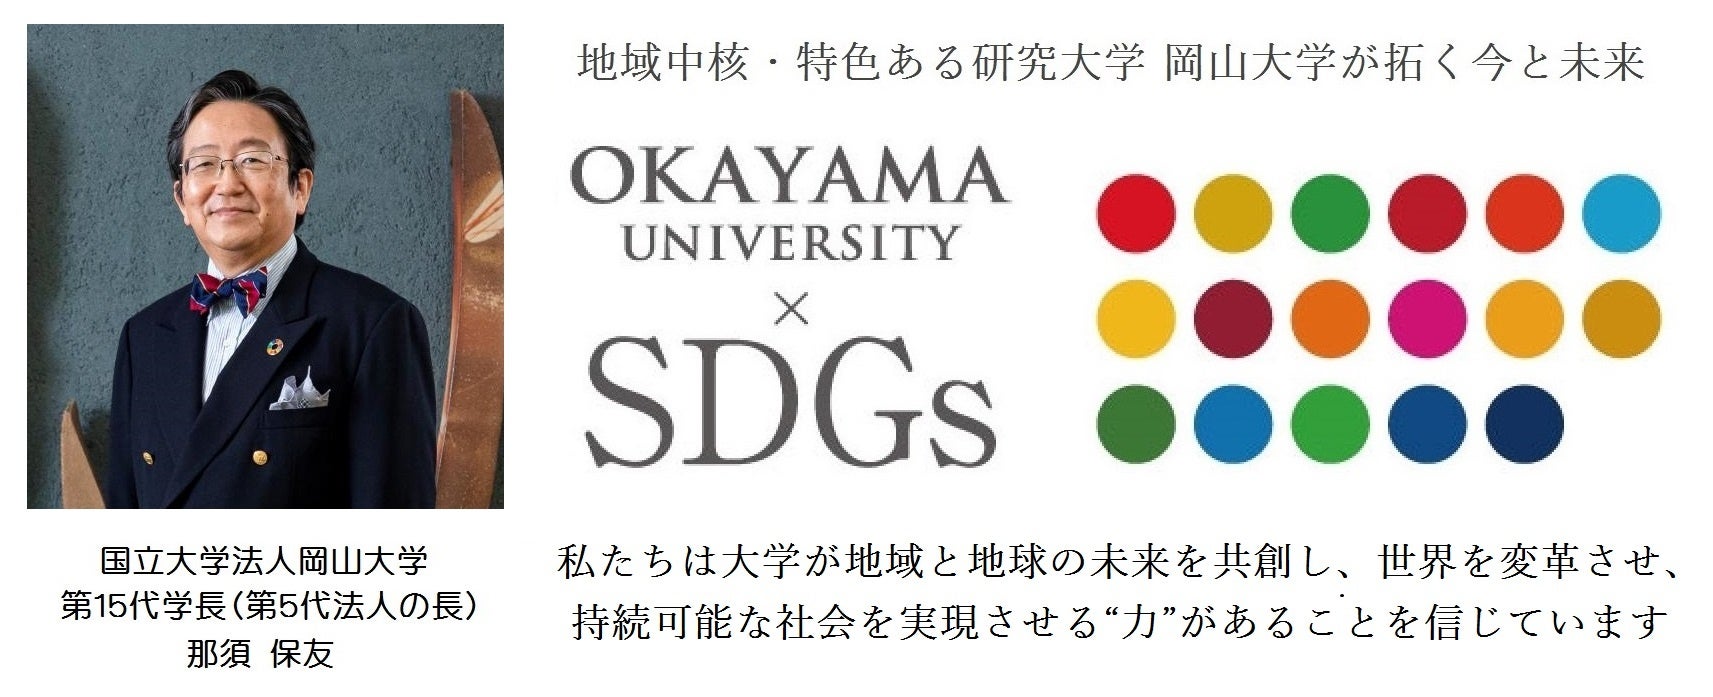 【岡山大学】国際中高大学連携「SDGs Seminar 2023 Winter」を実施